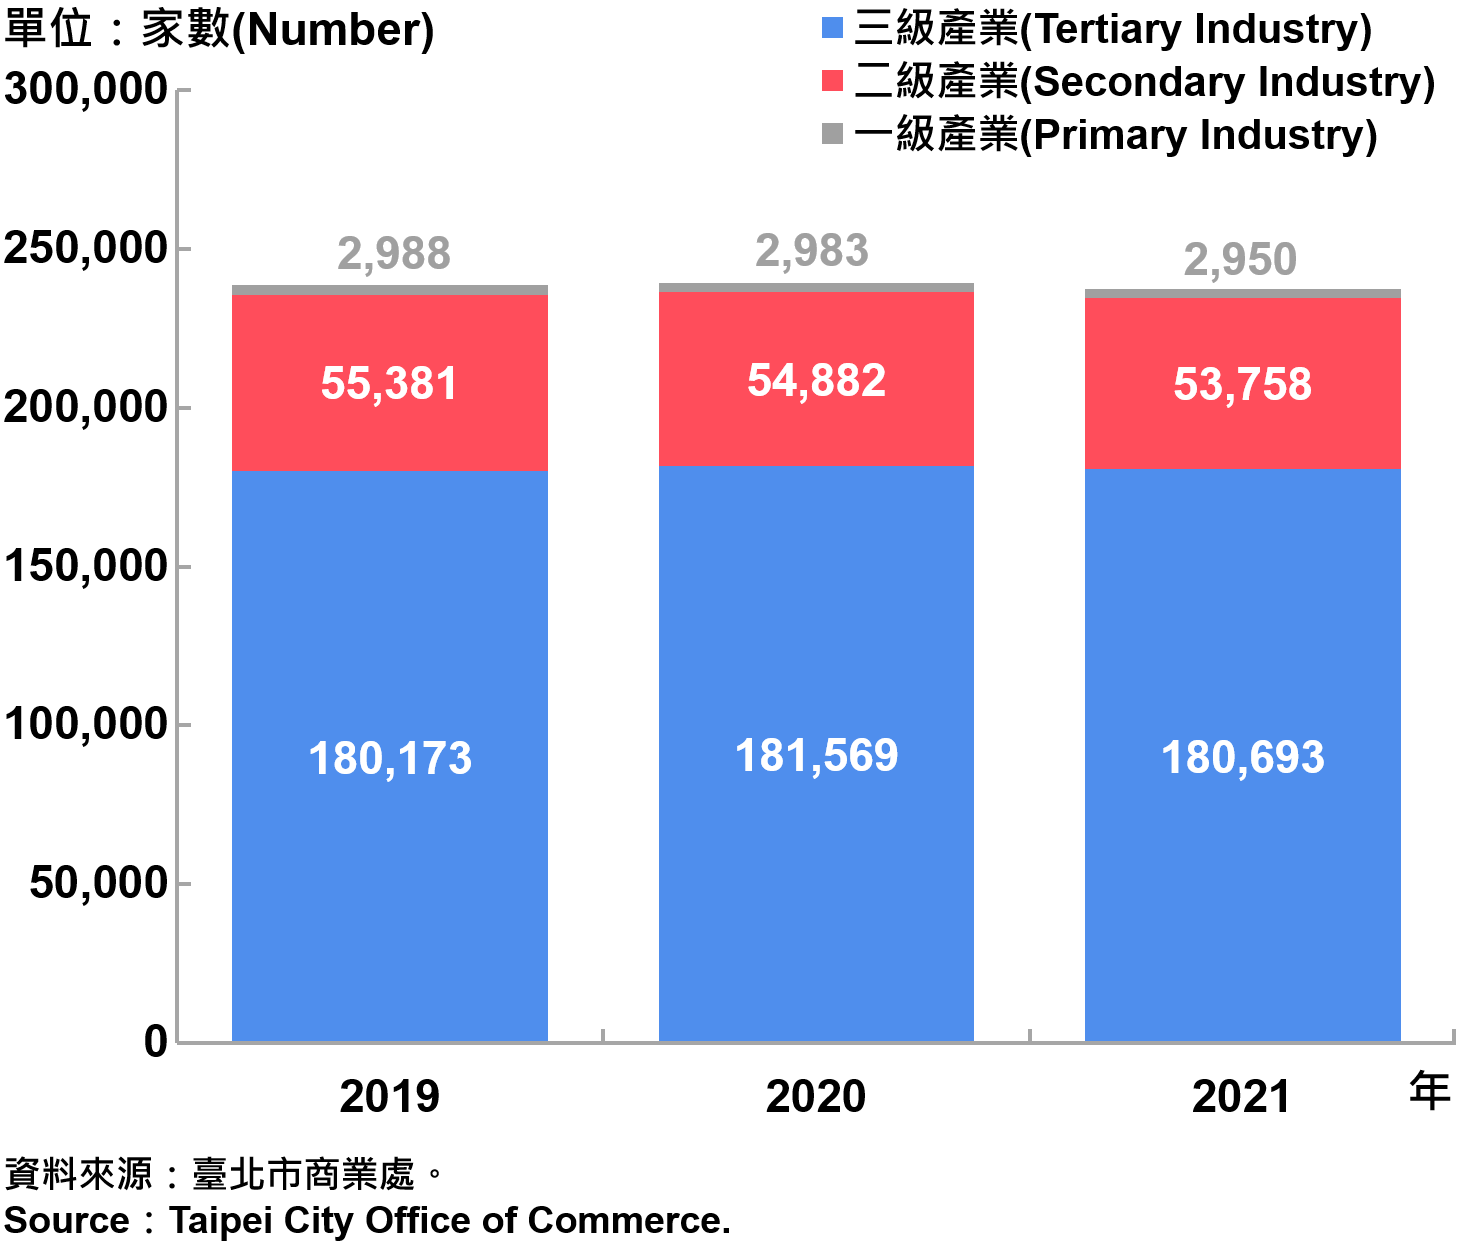 臺北市一二三級產業登記家數—2021 Number of Primary , Secondary and Tertiary Industry in Taipei City—2021